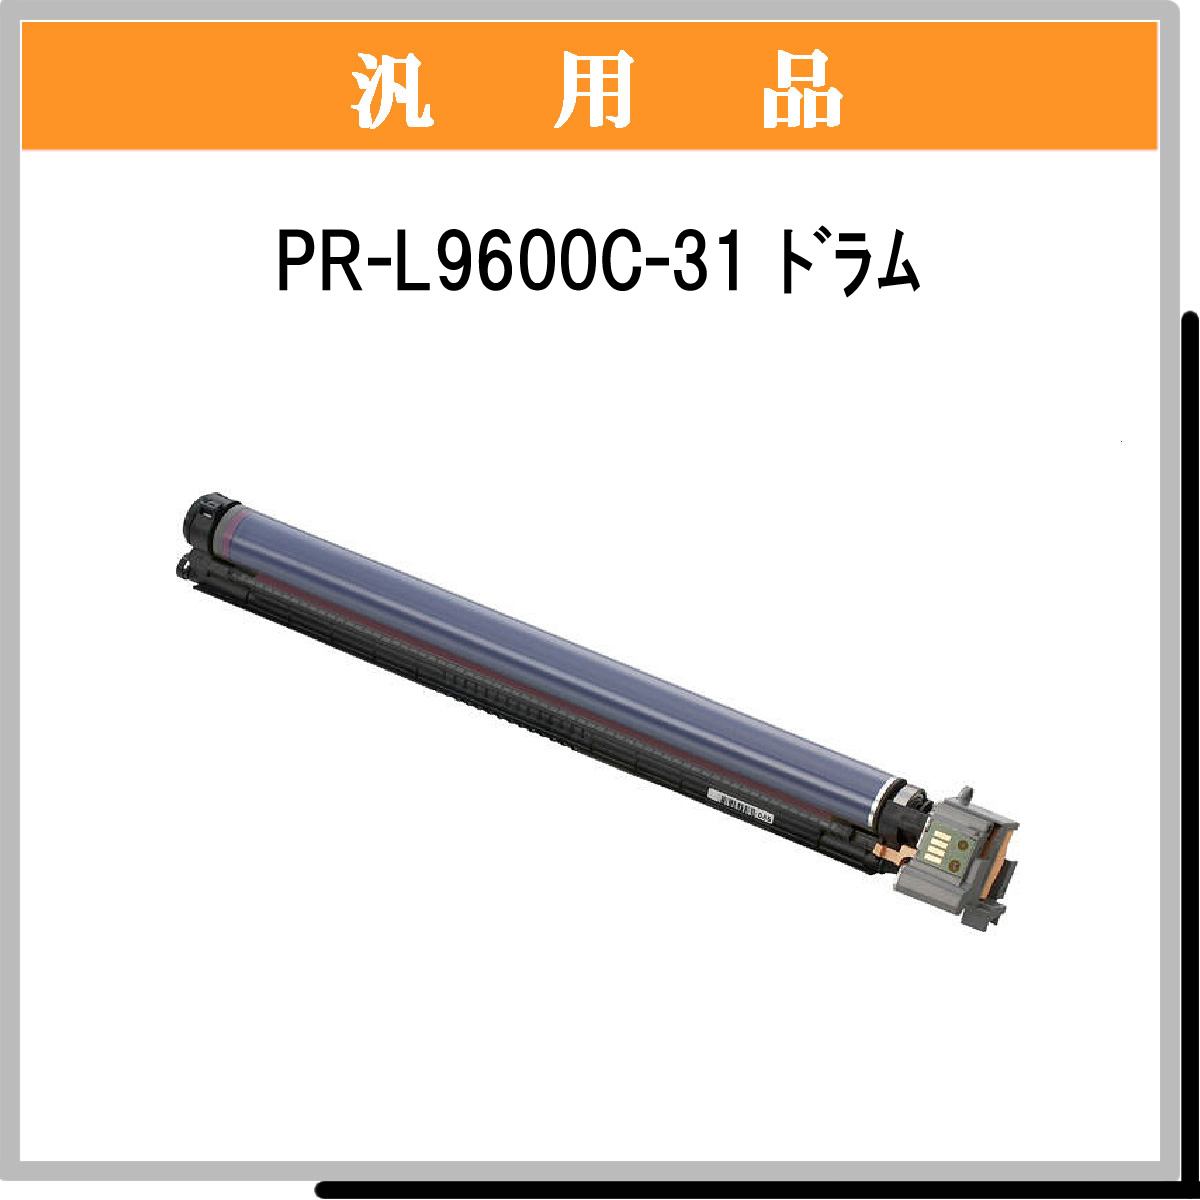 PR-L9600C-31汎用